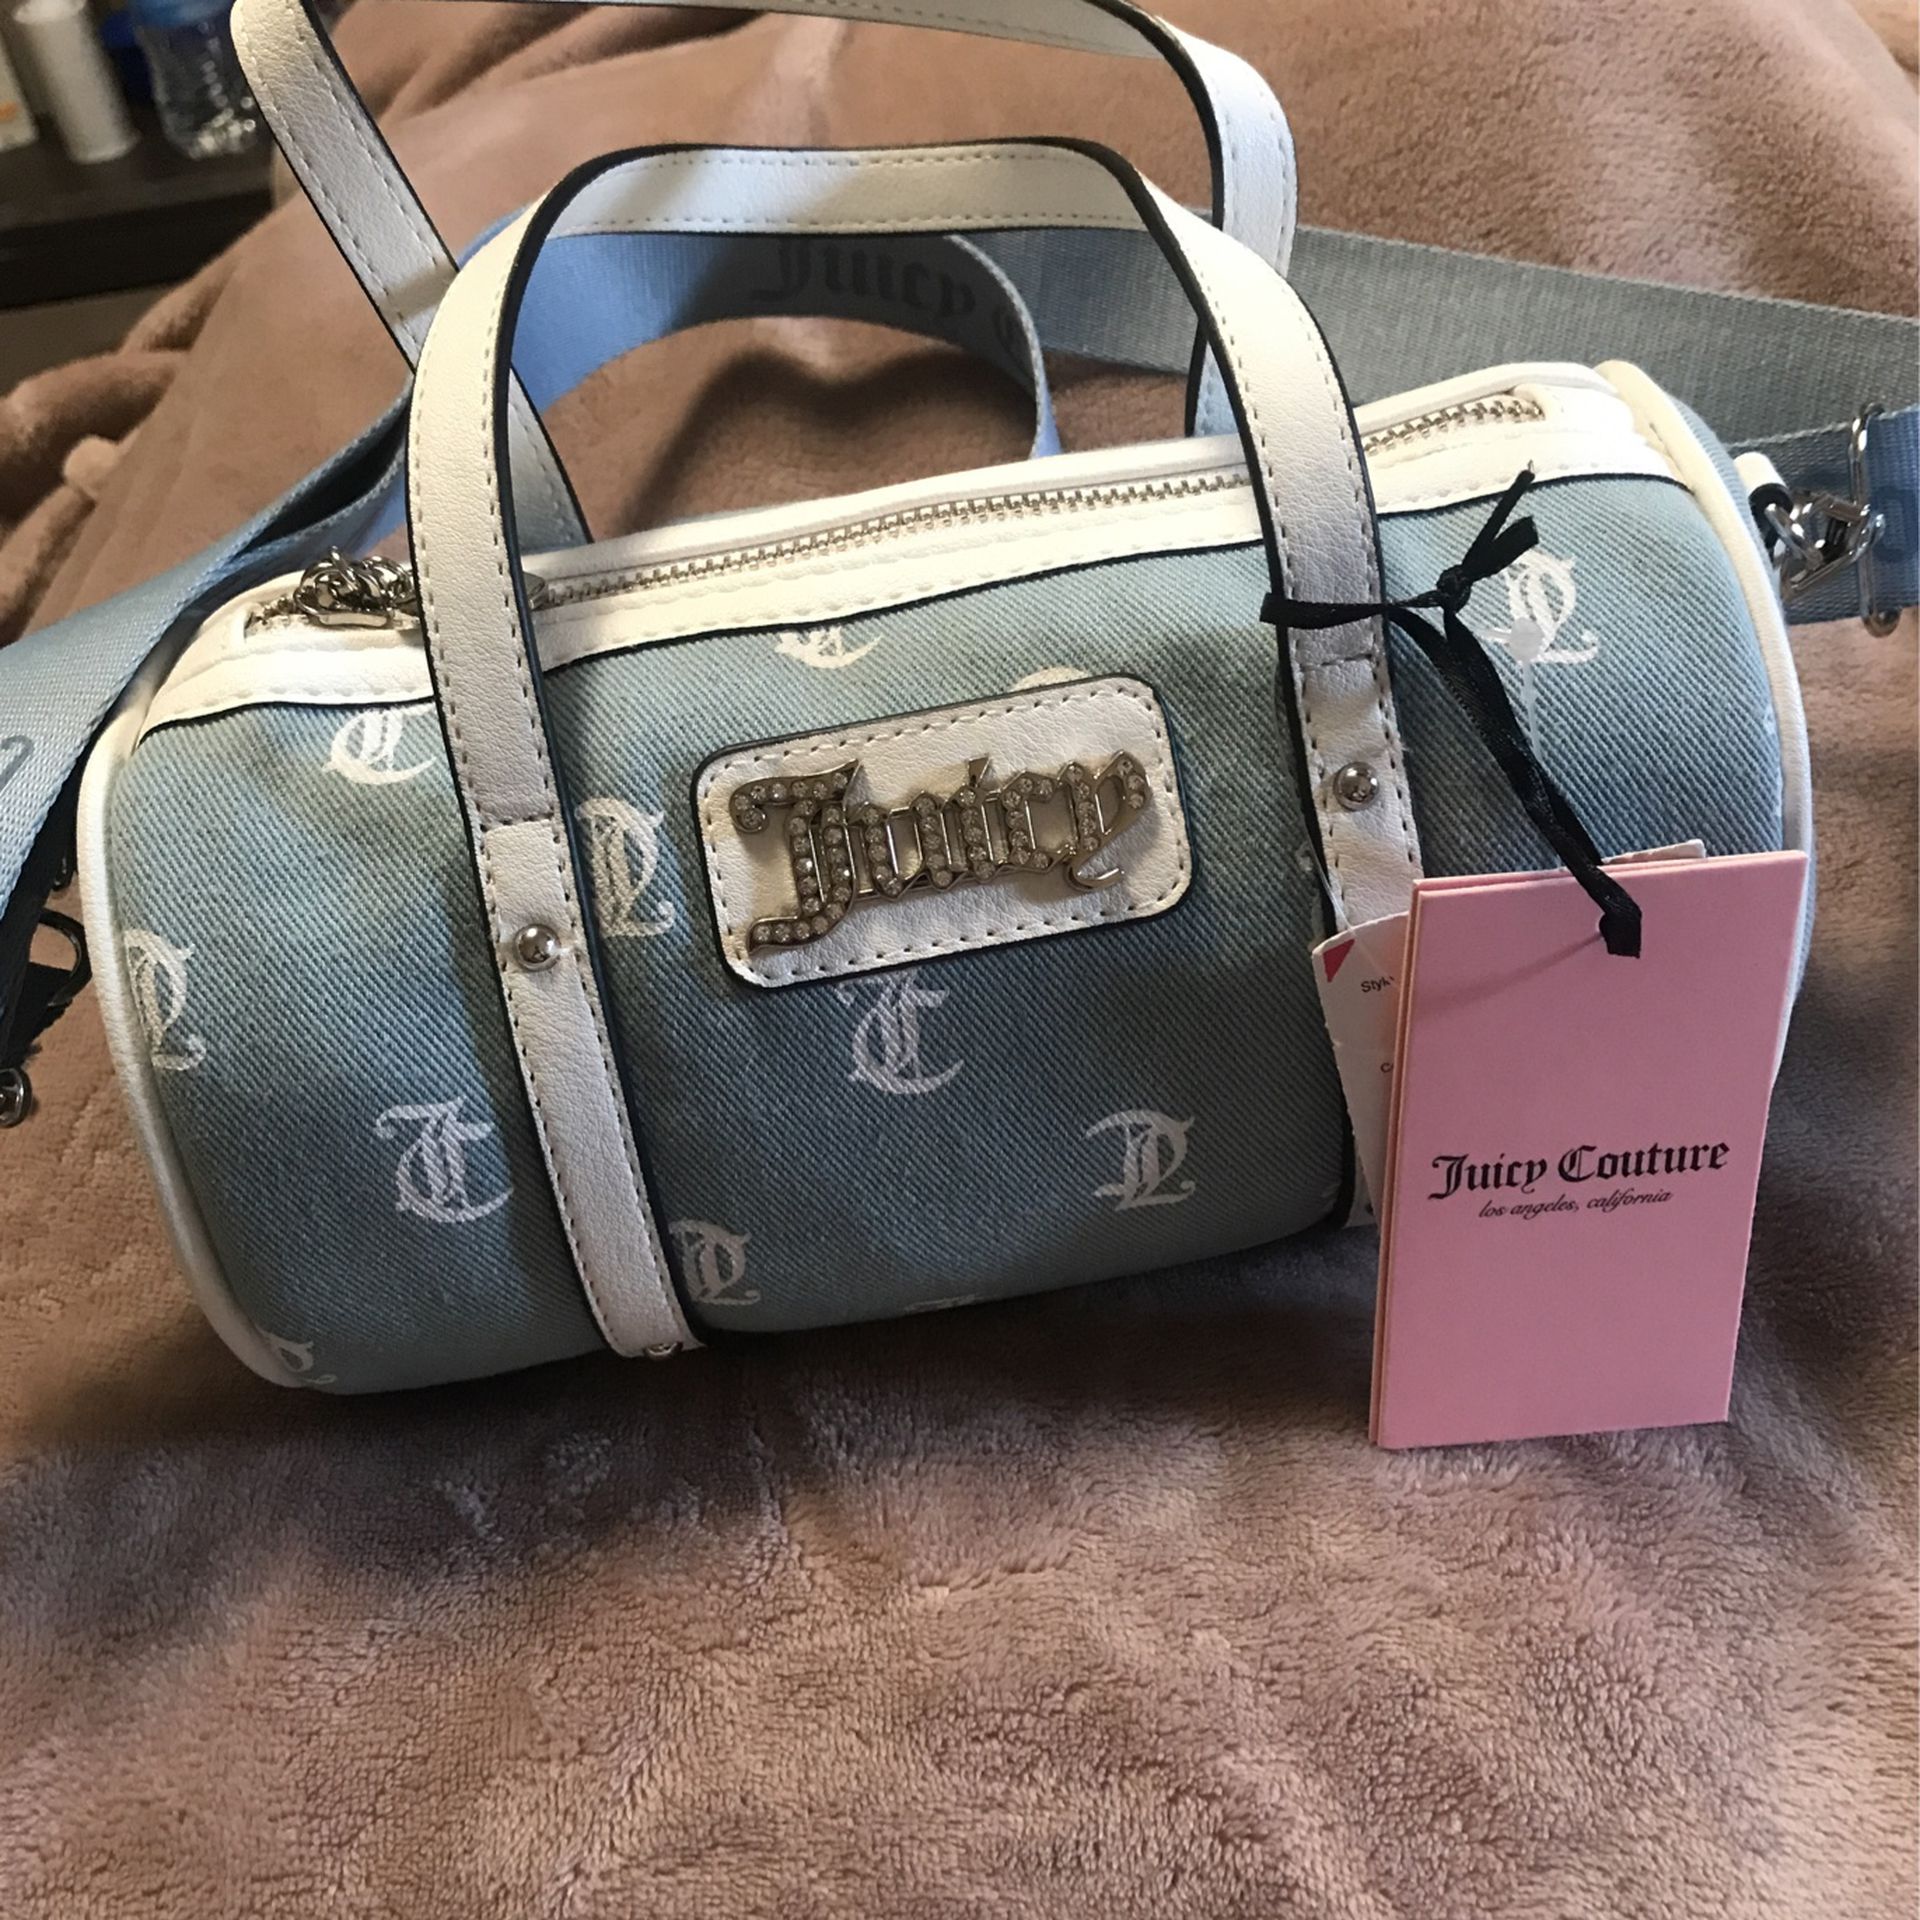 New Denim Barrel Bag Juicy Couture $45